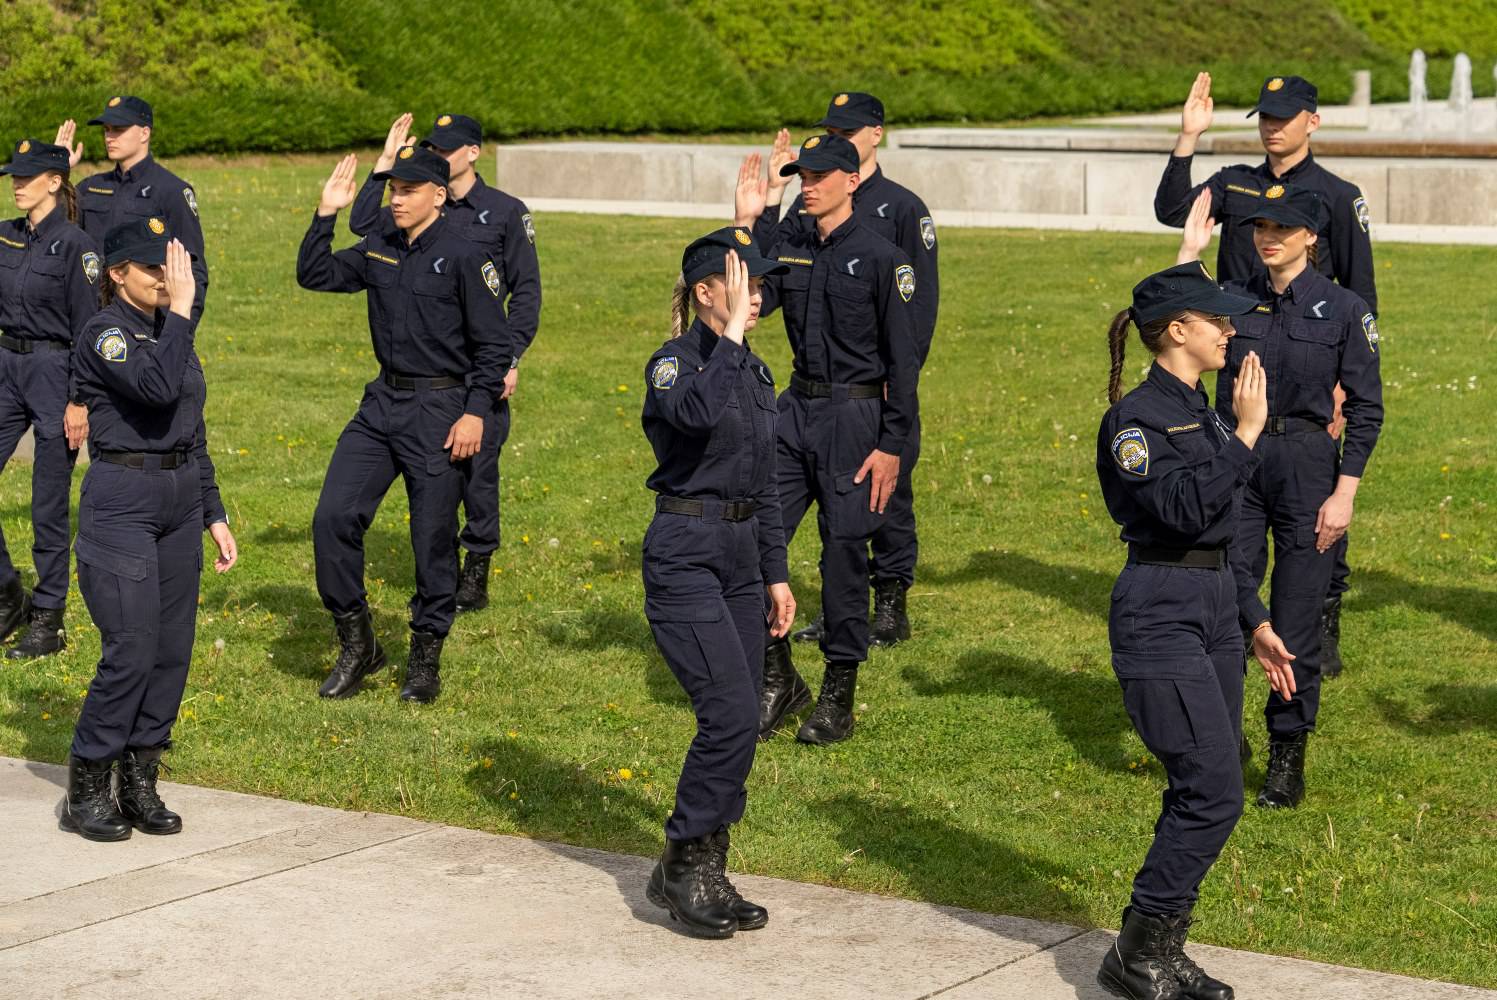 VIDEO Pogledajte kako policajci plešu na 'Rim Tim Tagi Dim'